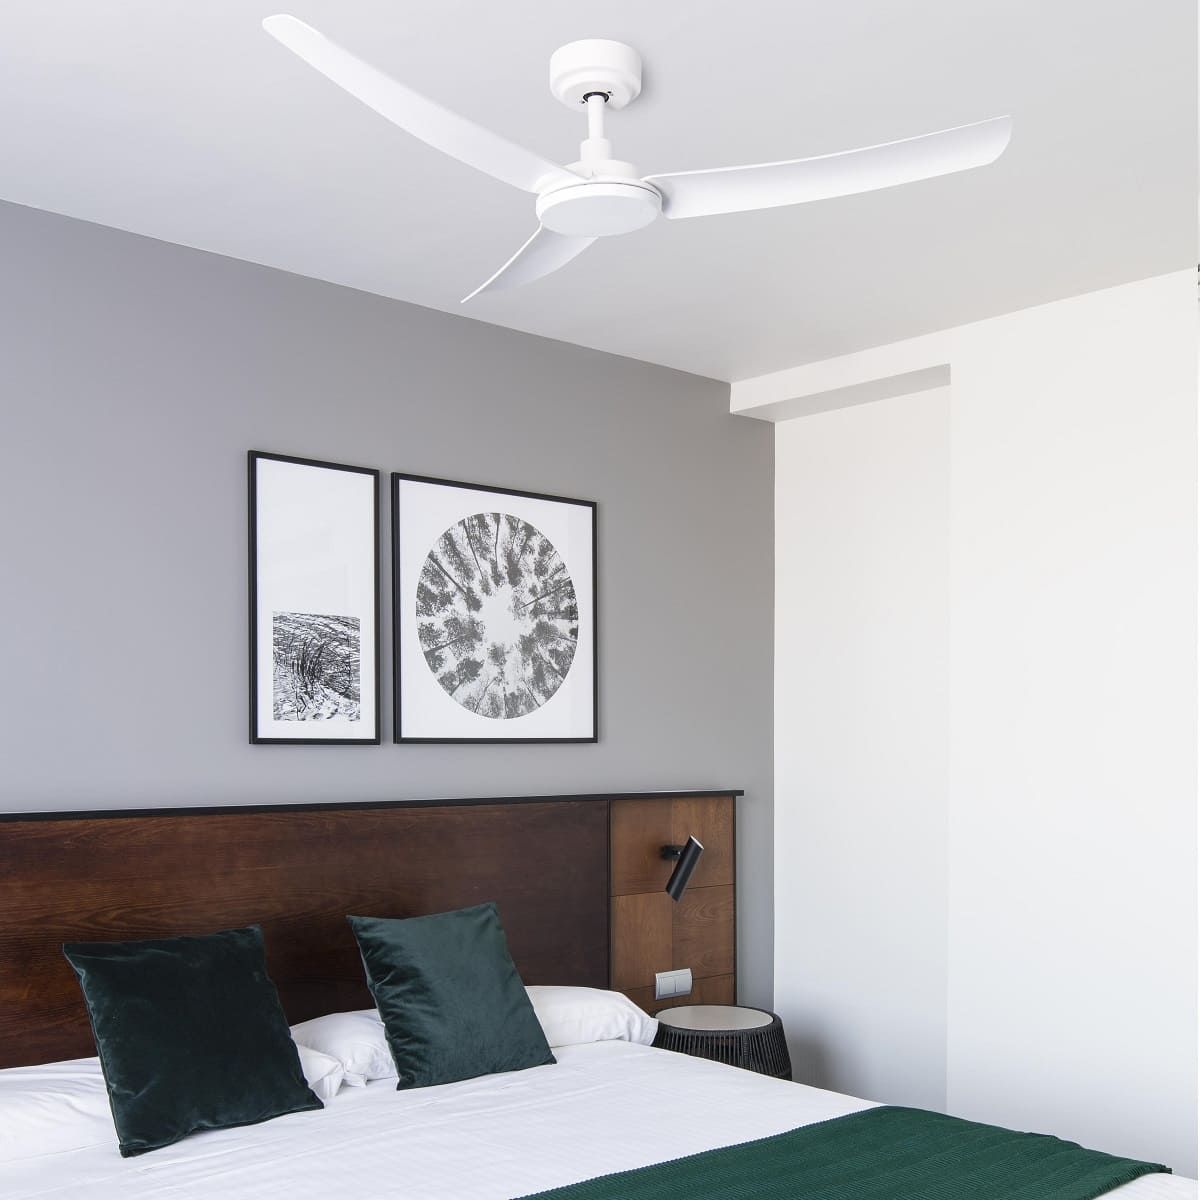 Por qué son tan recomendables los ventiladores de techo?